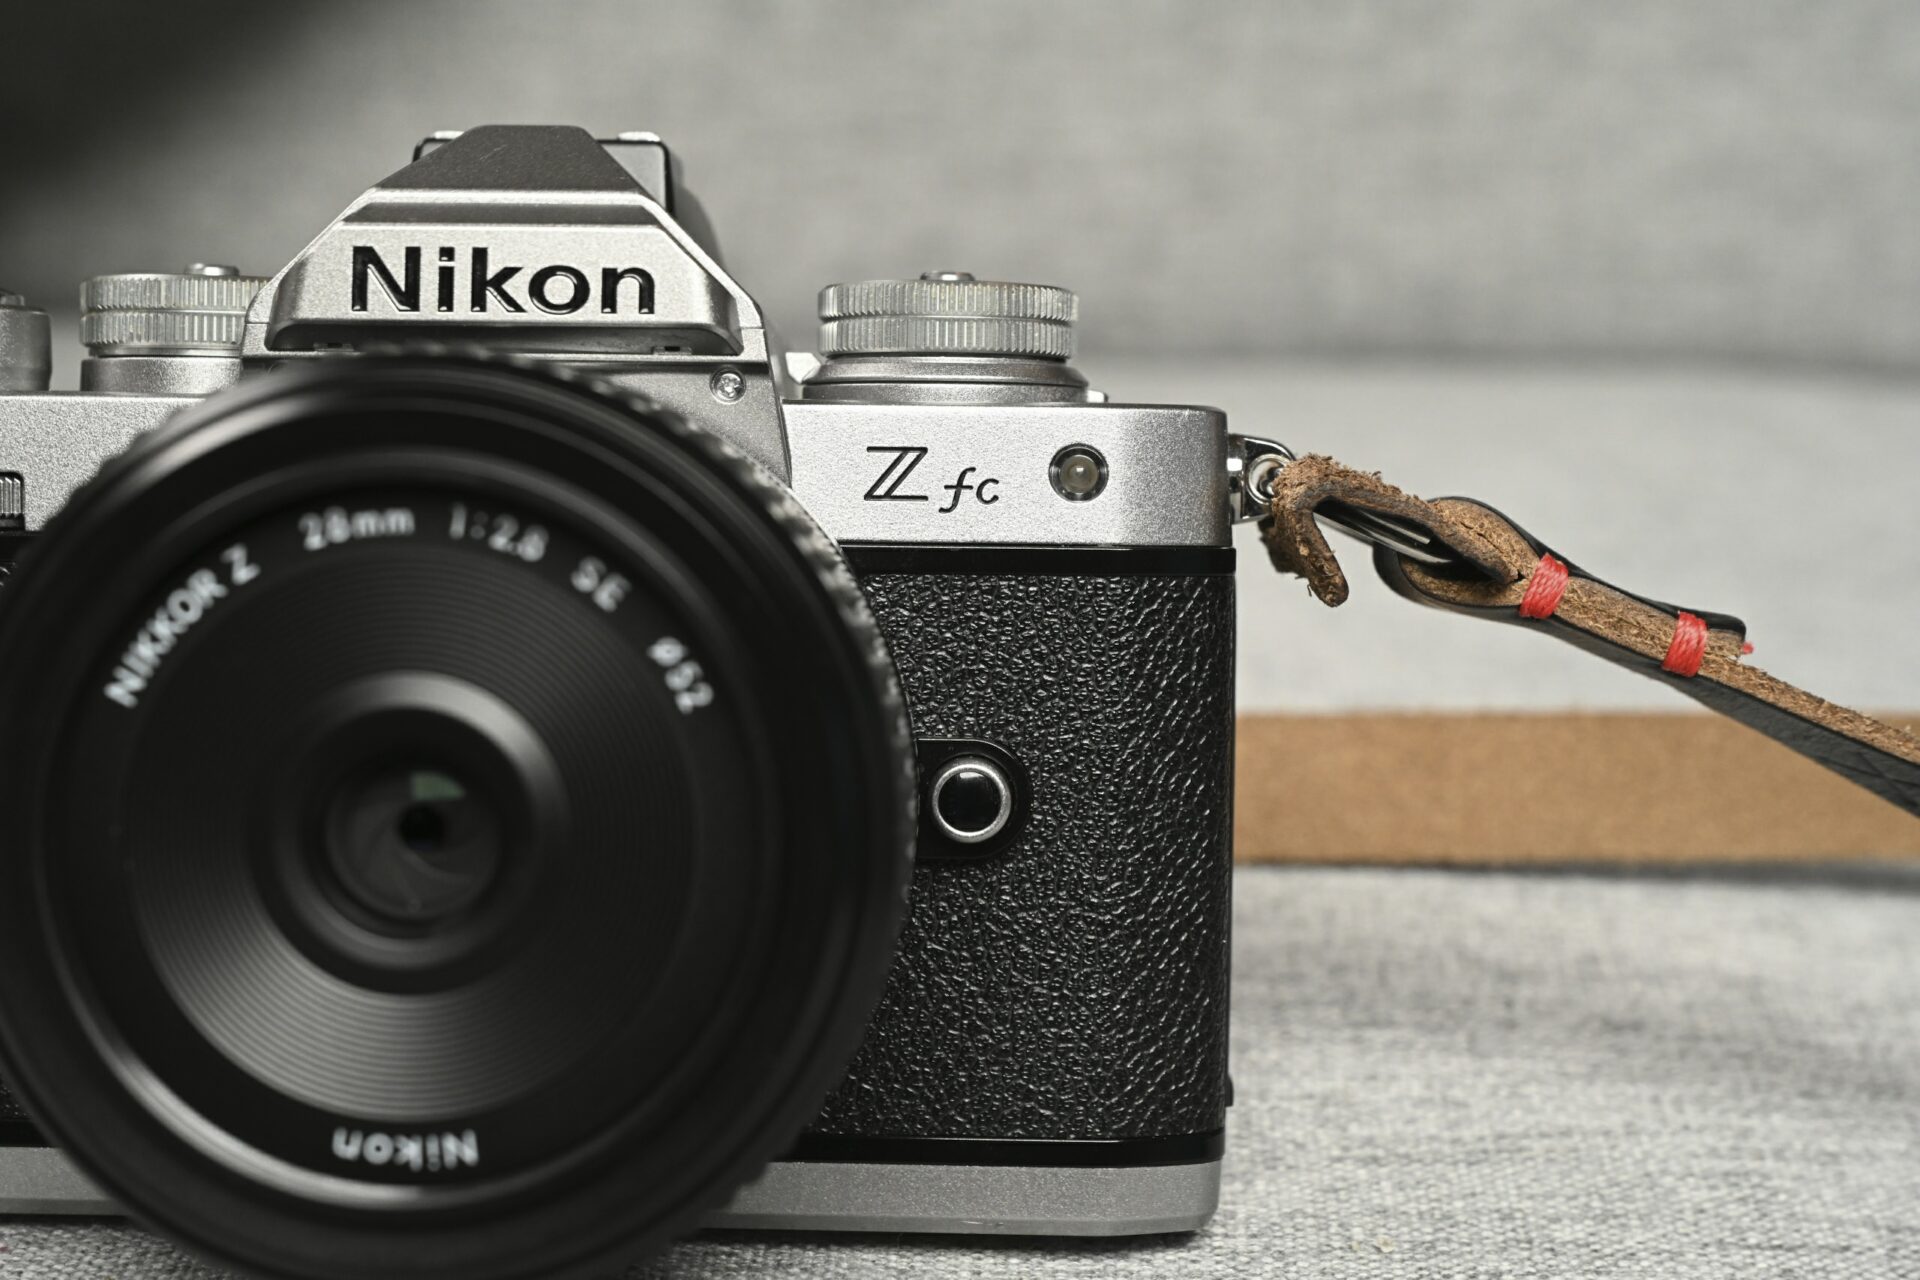 Avec le Z fc, Nikon adresse à la fois un clin d’œil au FM2, sorti en 1982, et cherche à séduire les jeunes générations, séduites par les objets vintages.